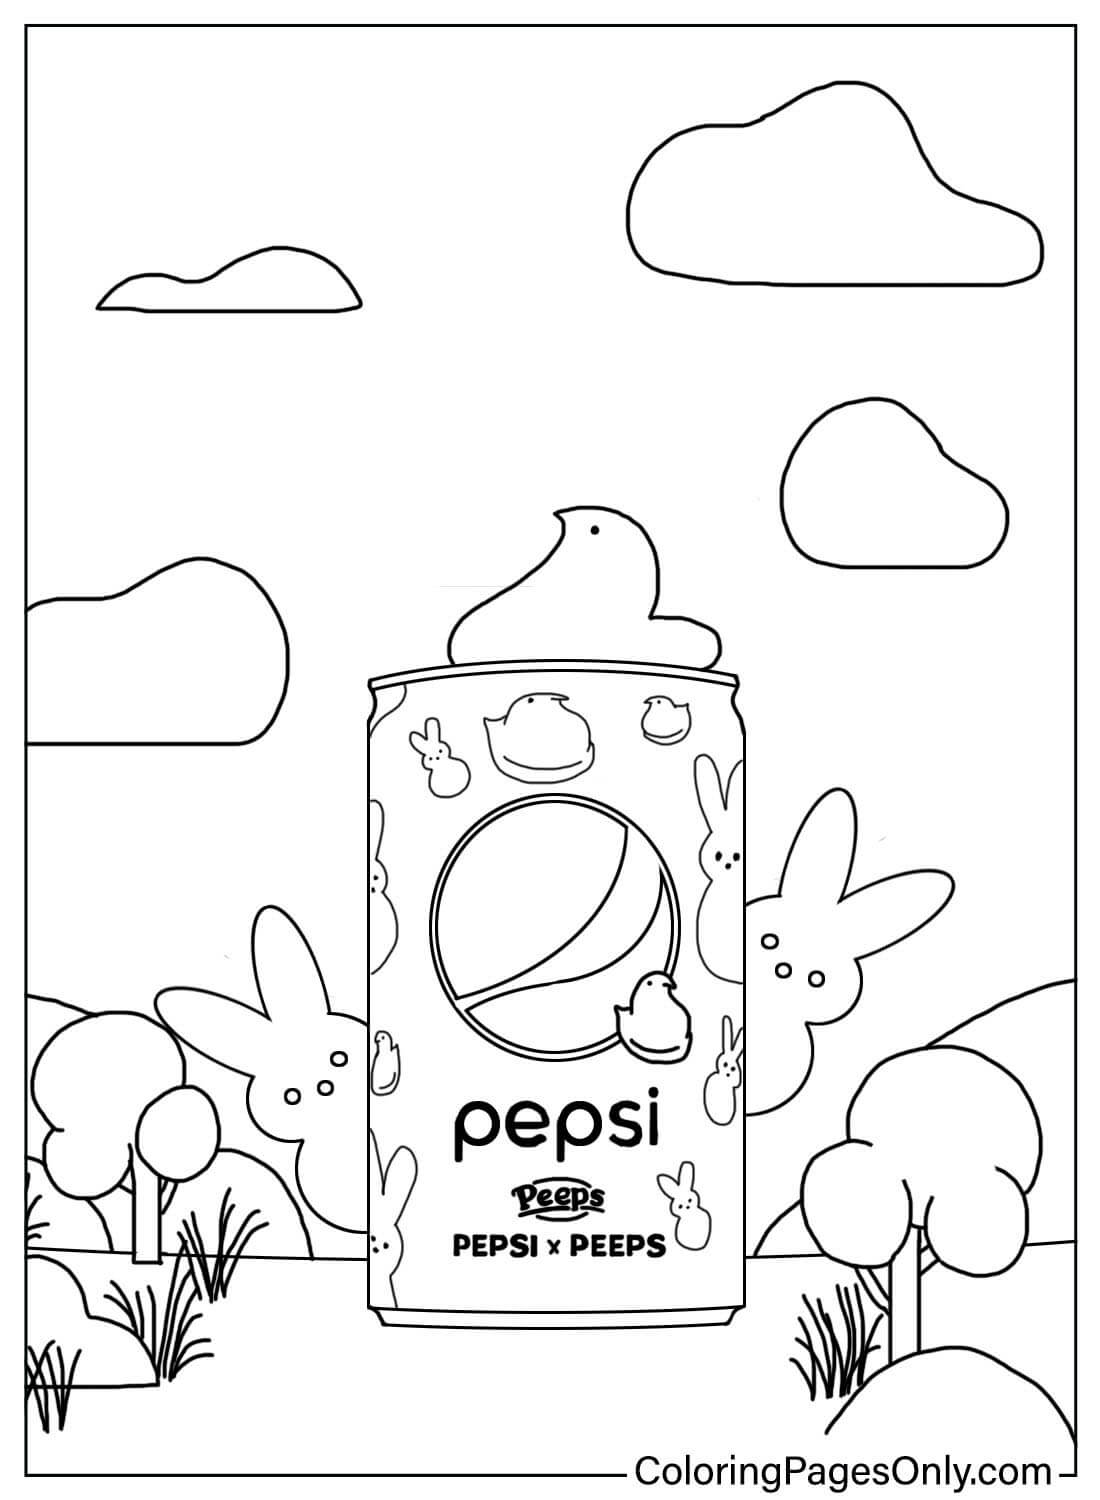 Peeps und Pepsi von Peeps